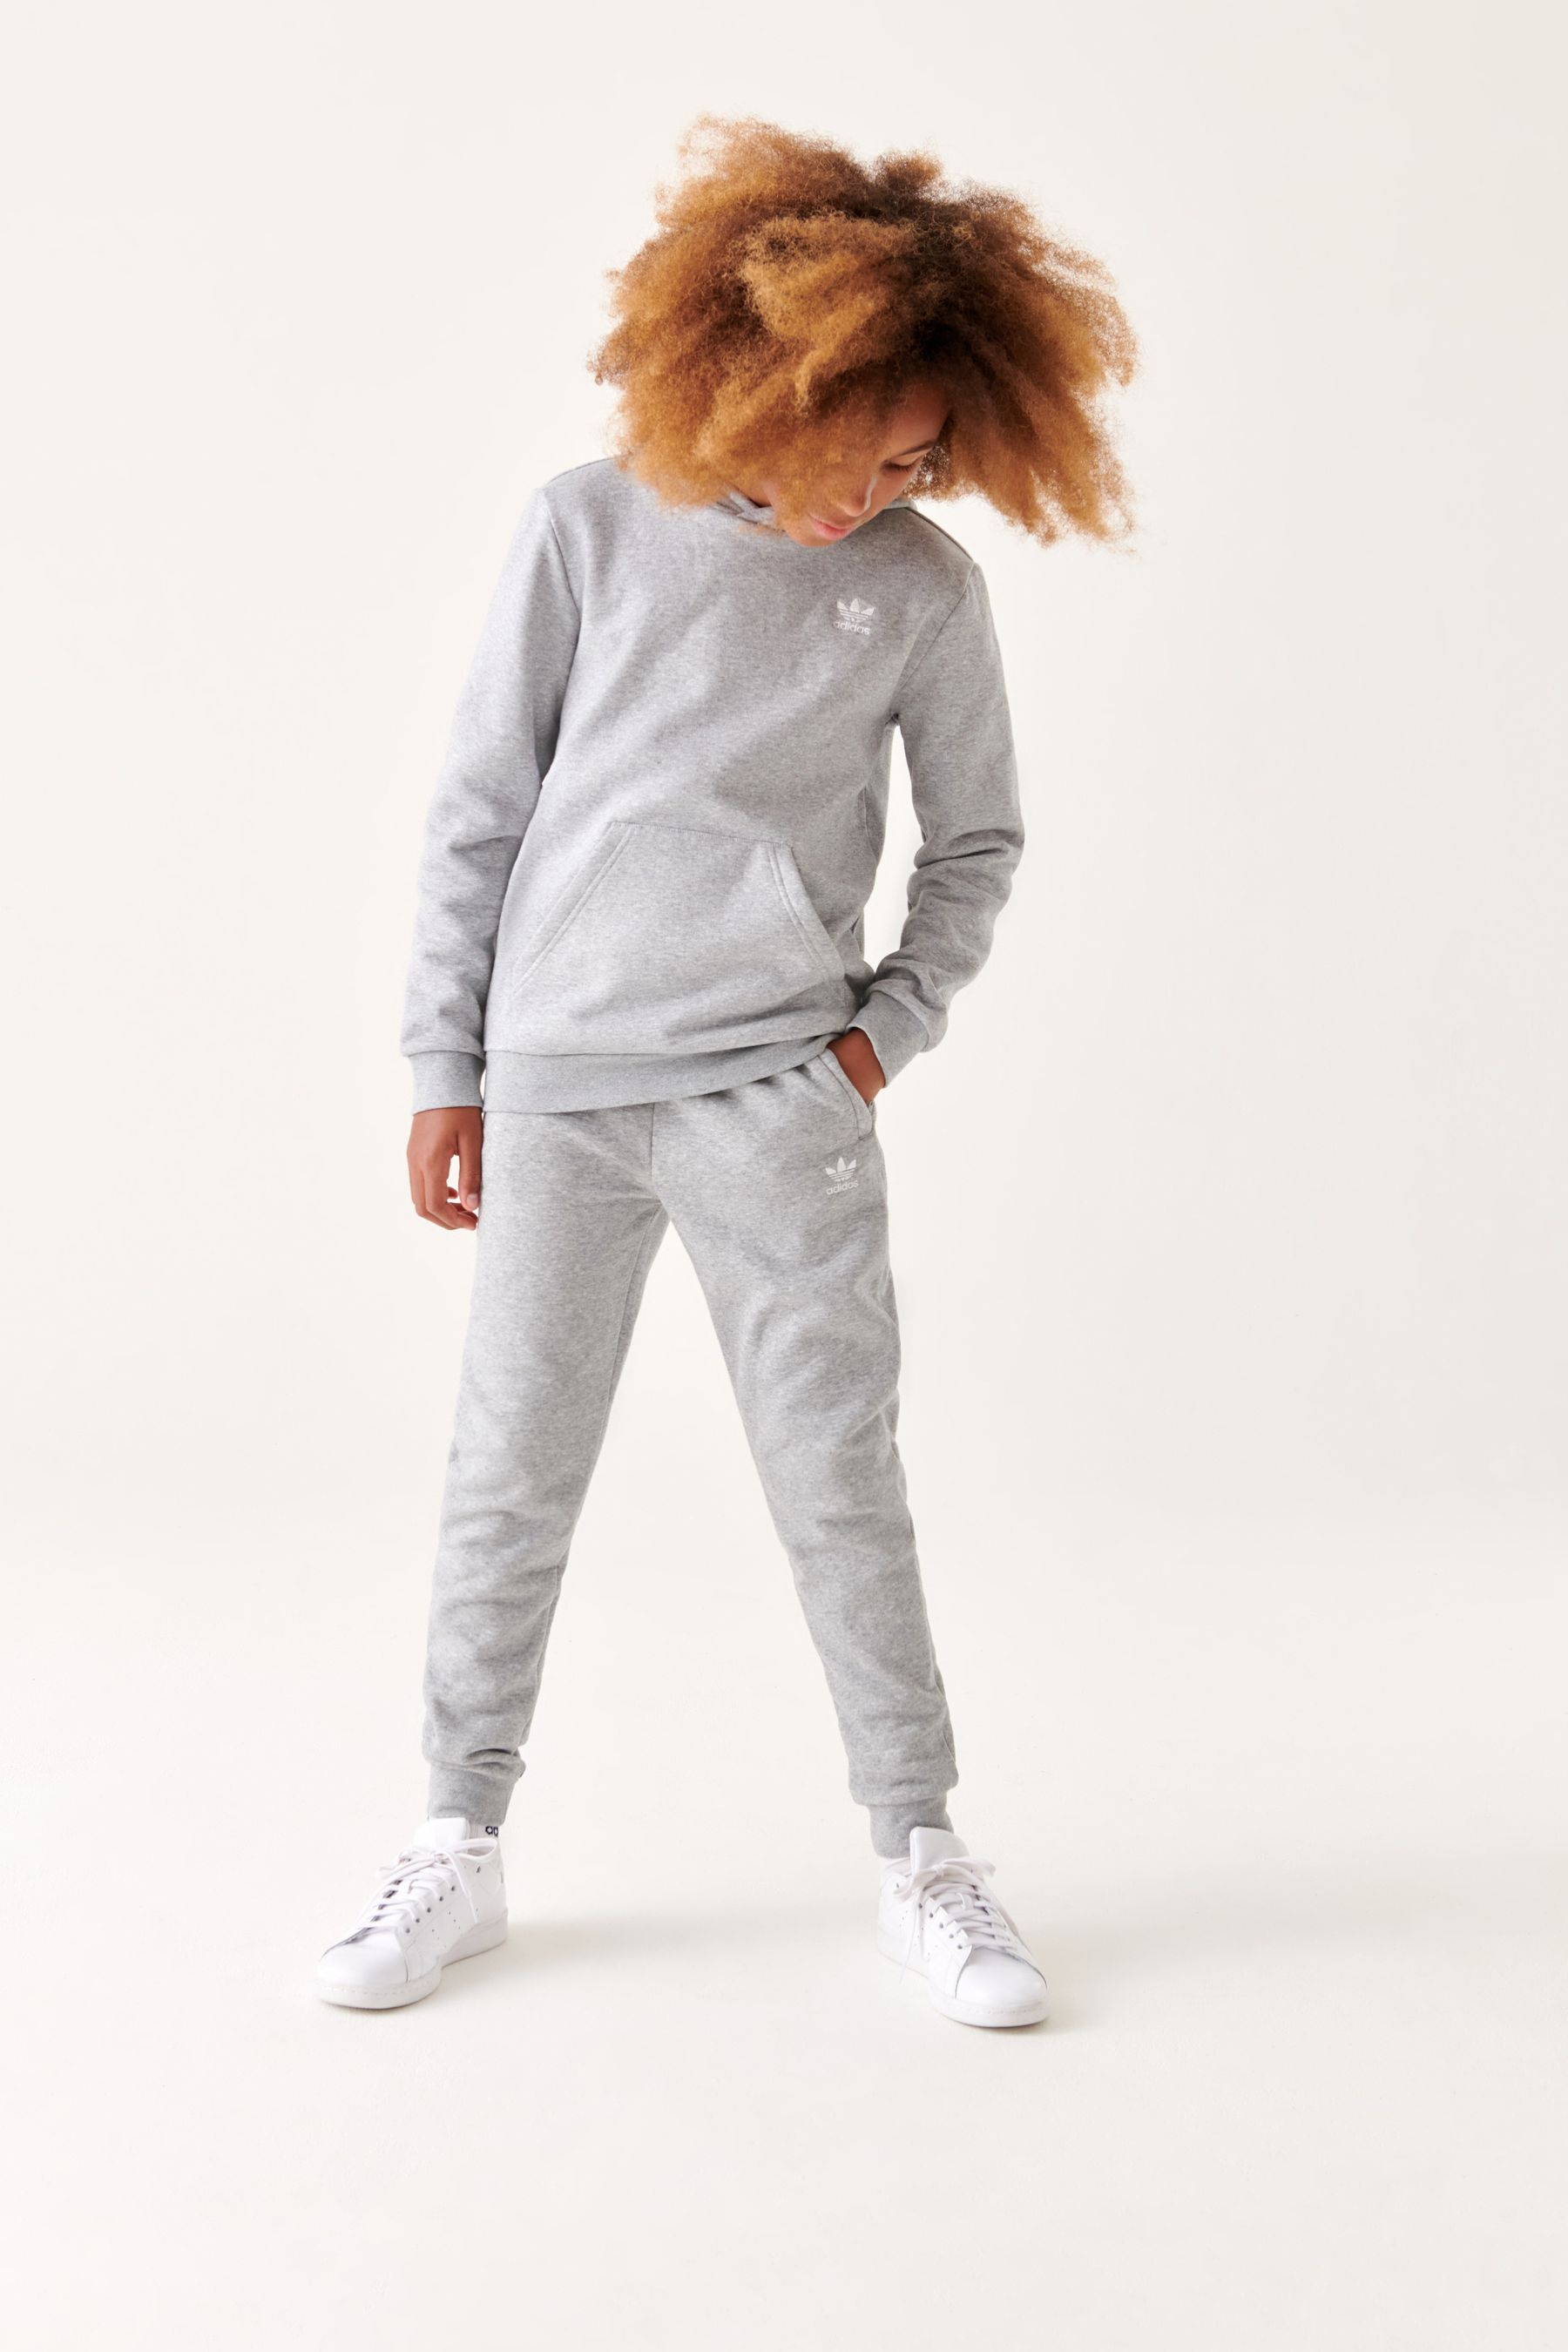 Детские беговые брюки Adidas Originals Adicolor adidas originals, серый